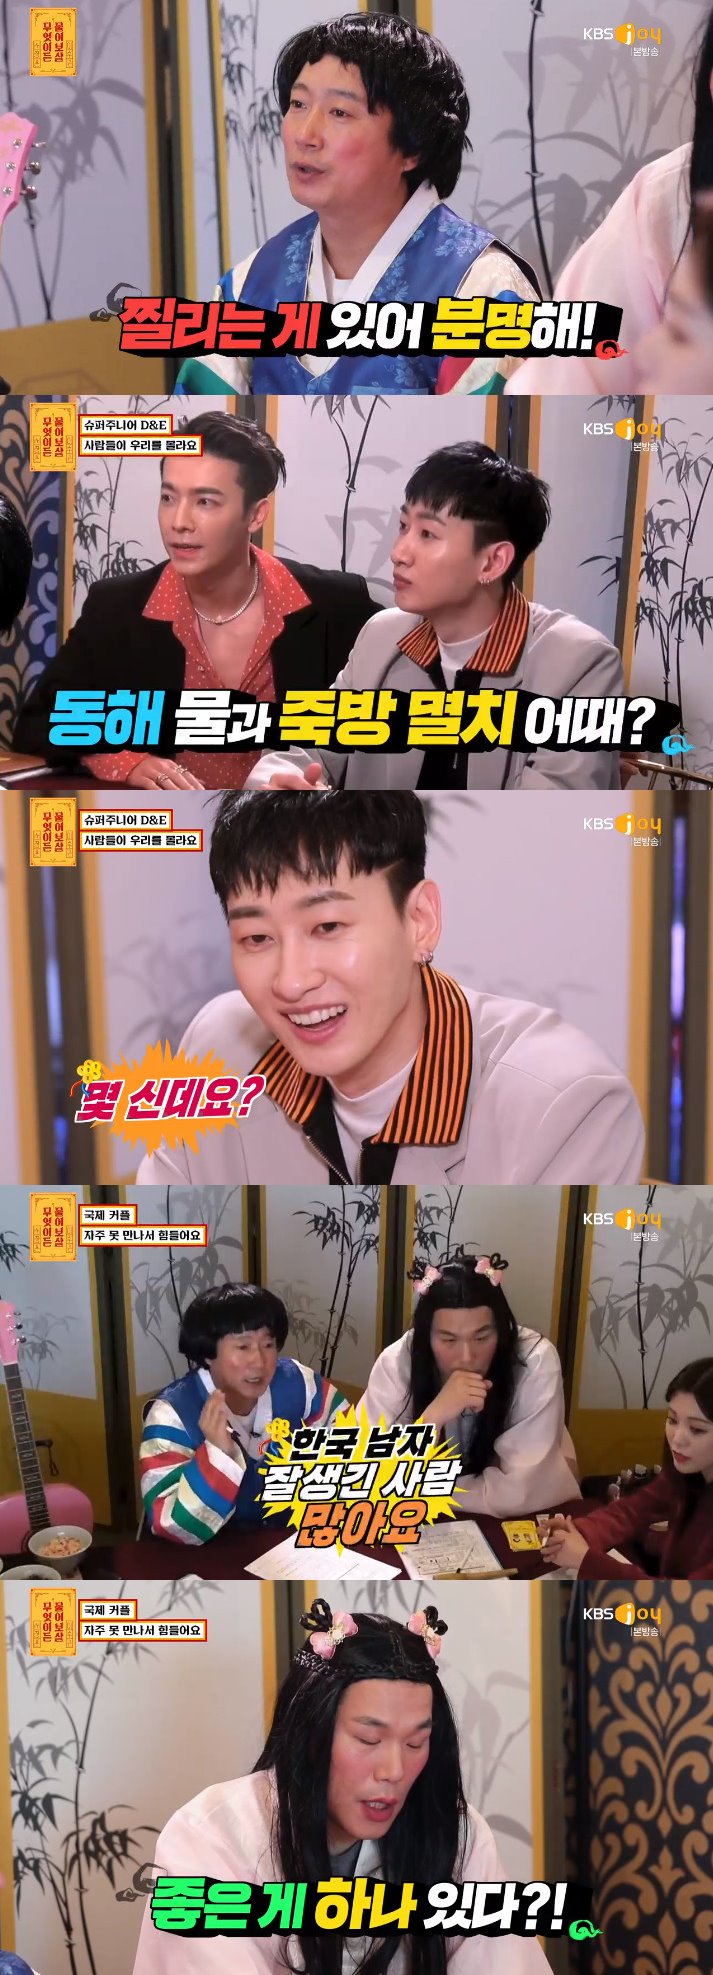 KBS Joy ‘무엇이든 물어보살’ 방송 캡처